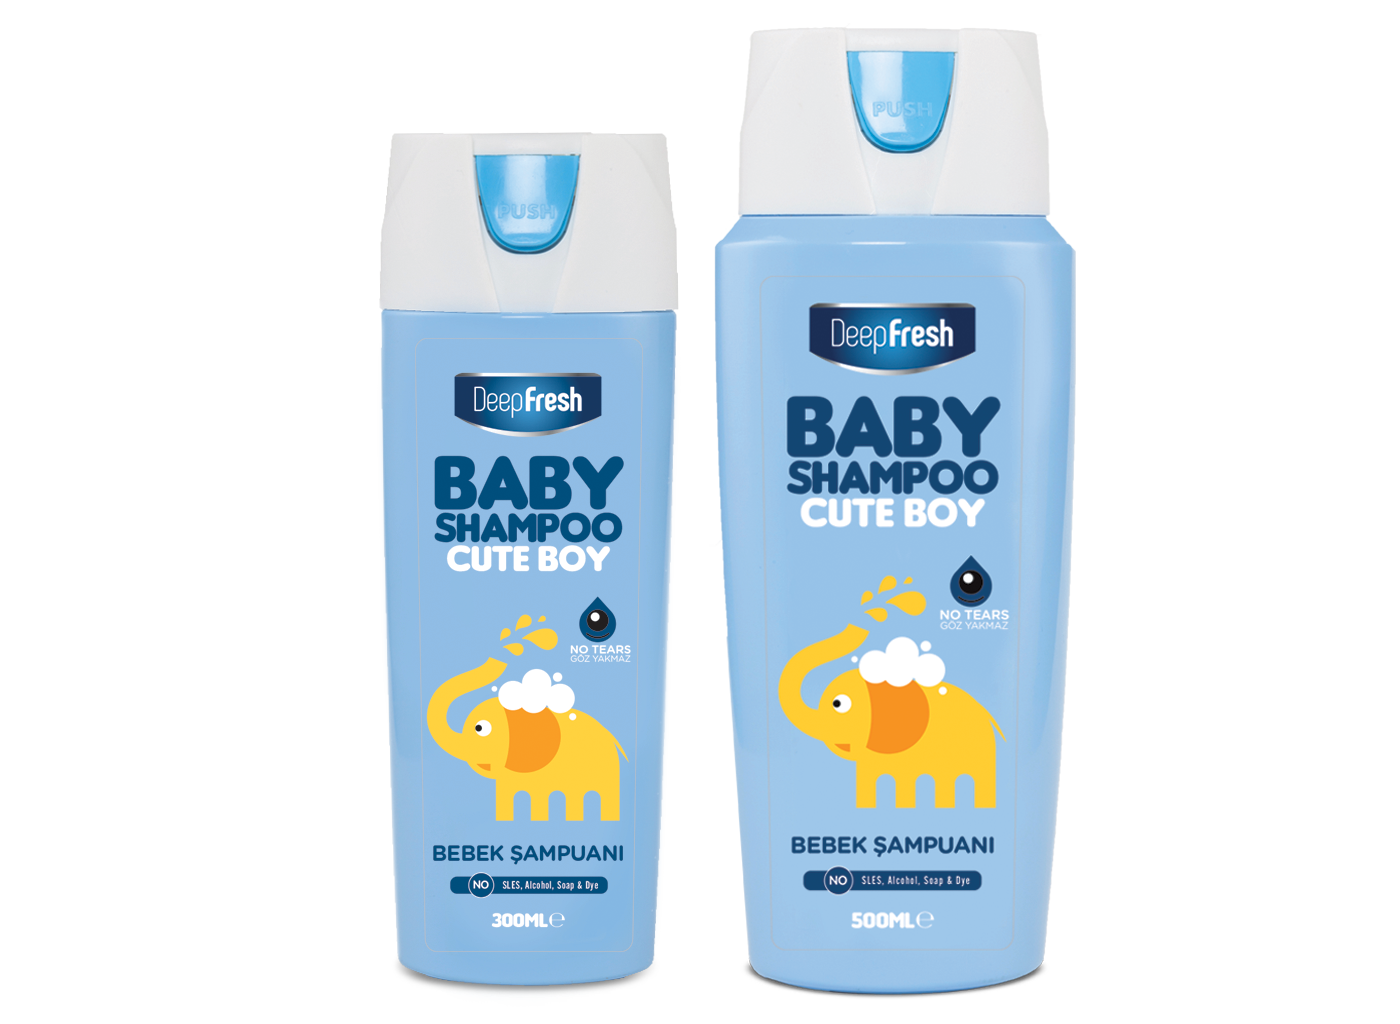 Cute Boy Baby Shampoo